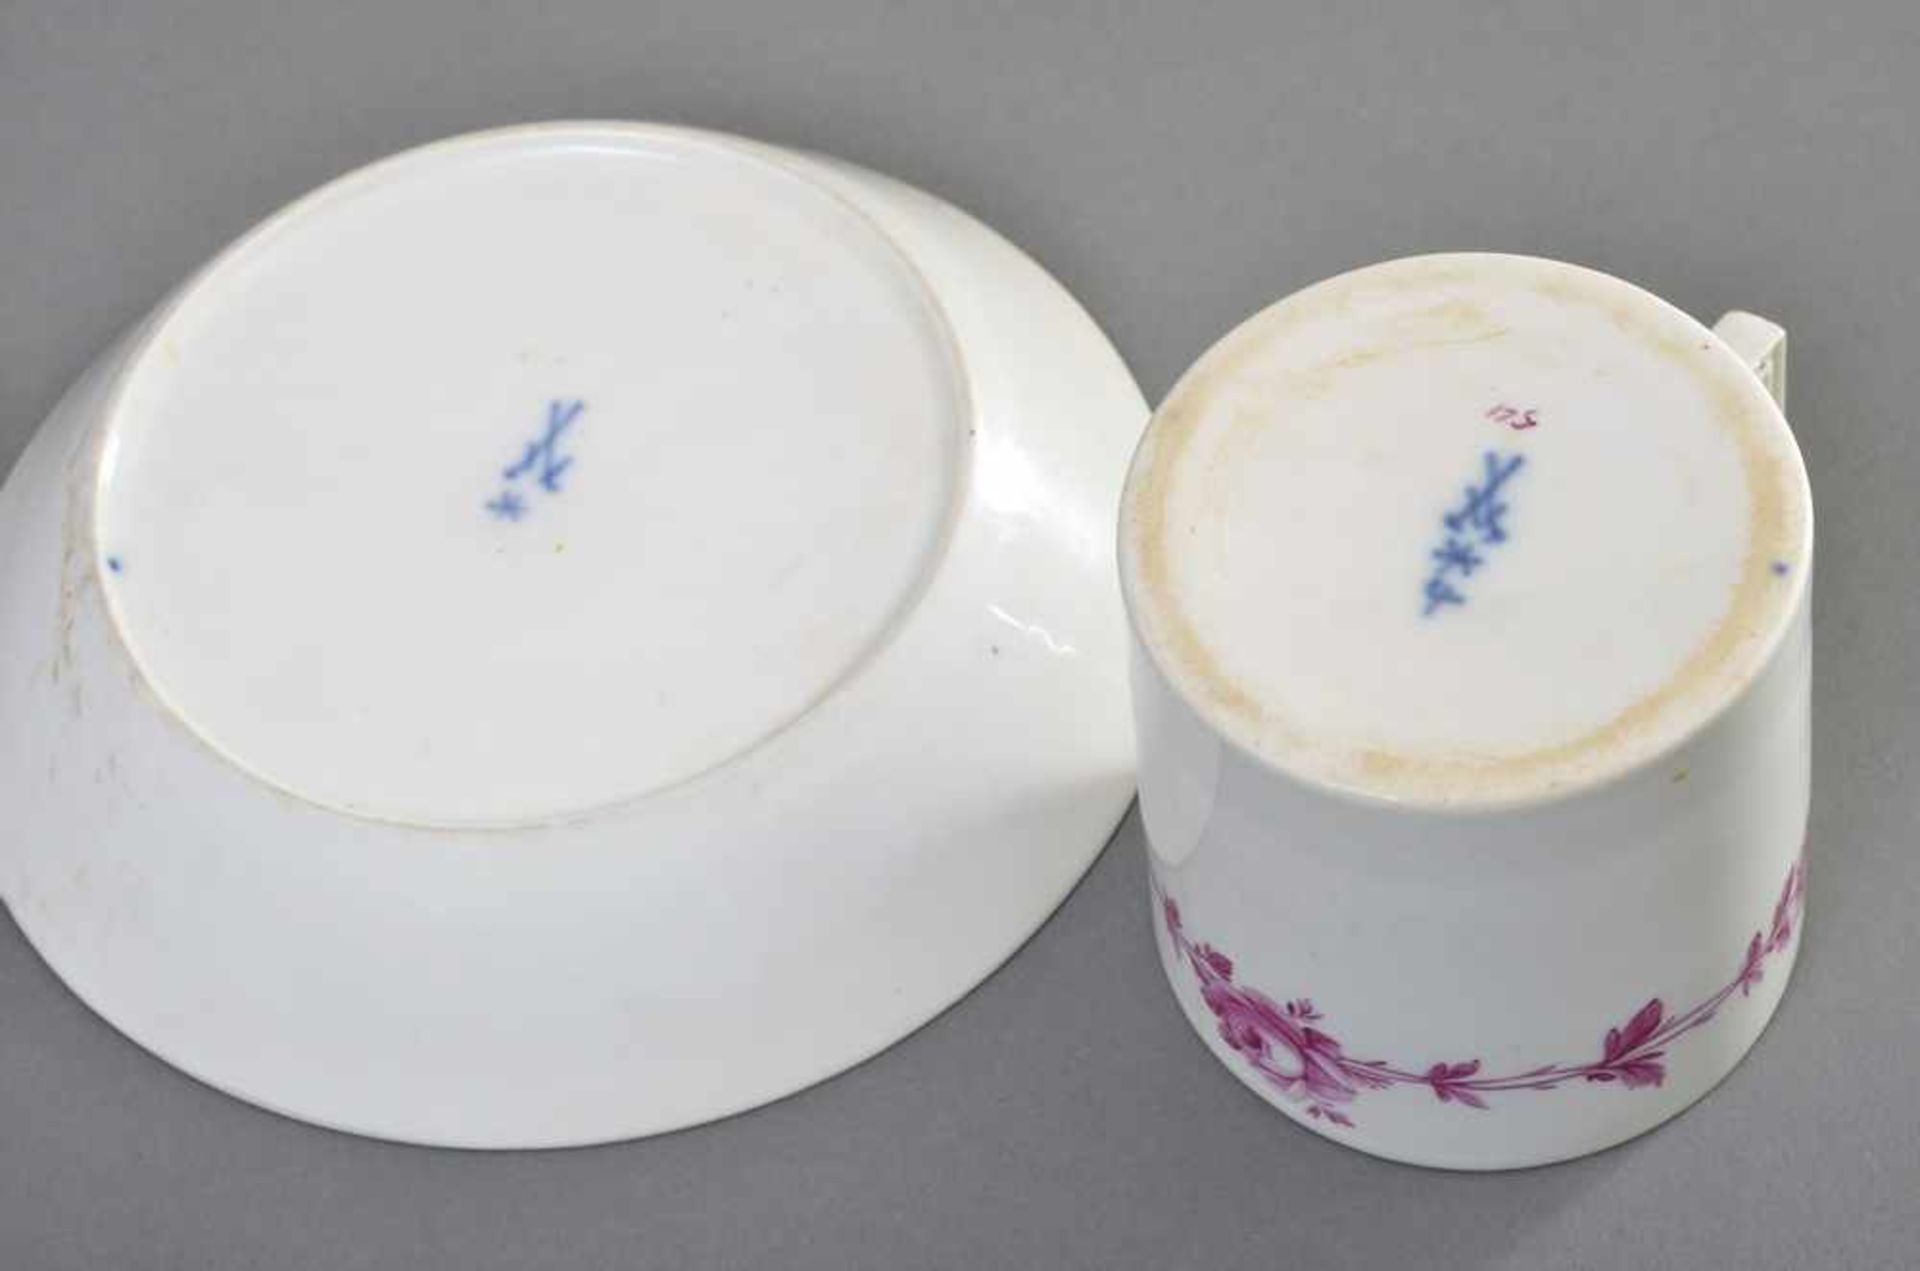 Marcolini Meissen Tasse "Purpur Rosenranke" in zylindrischer Form, H. 7,5cm berieben, Haarrisse ( - Bild 4 aus 4